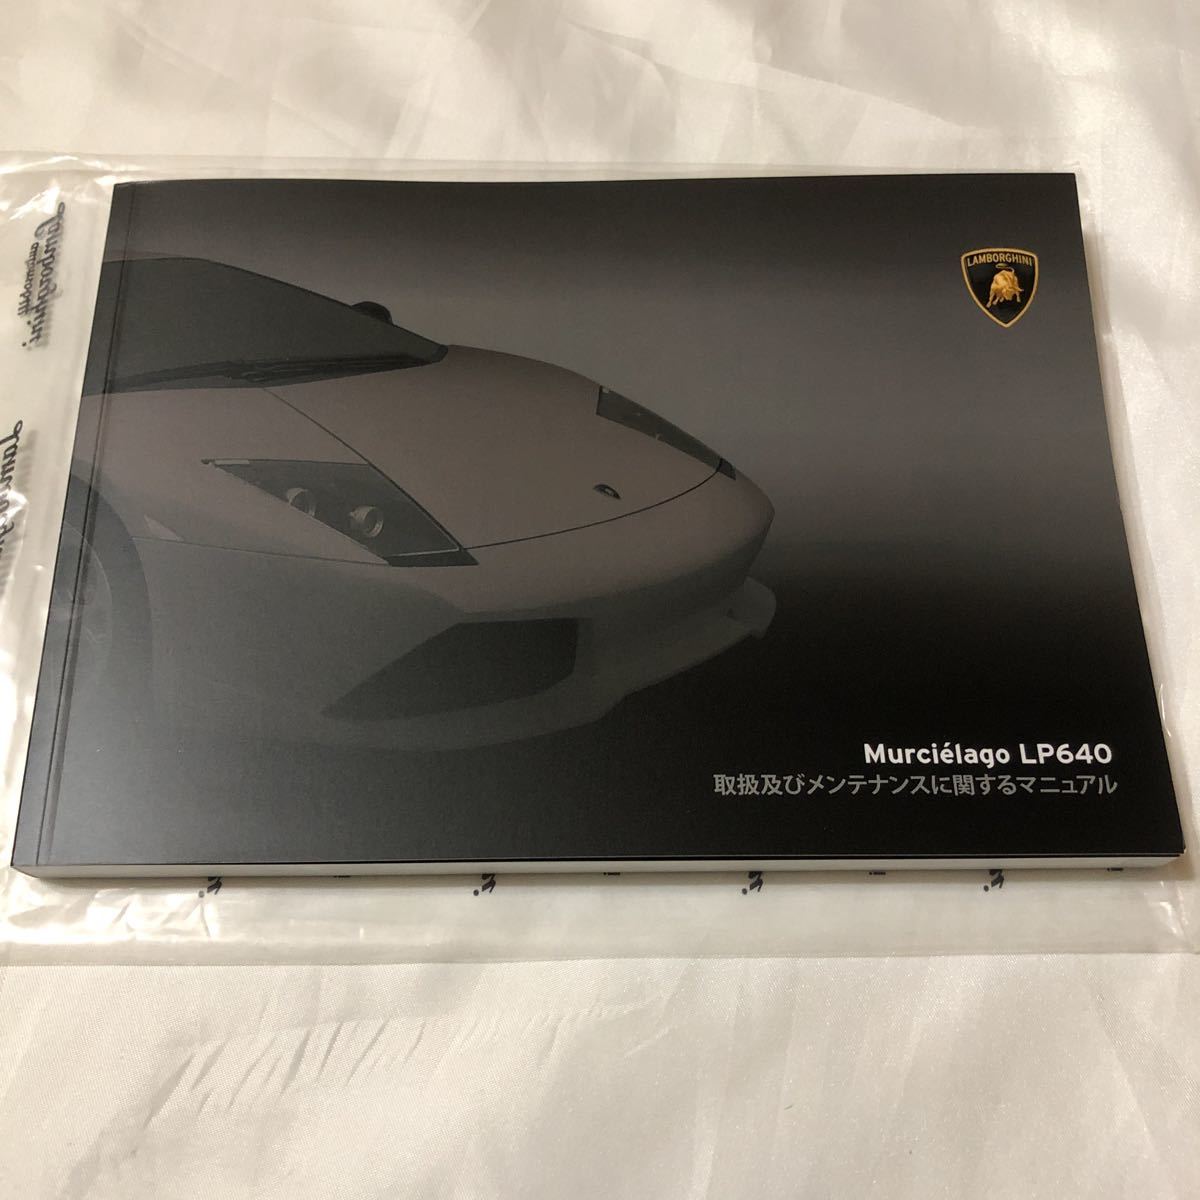 ランボルギーニ ムルシエラゴ LP640 日本語取説 オーナーズマニュアル 純正品 新品 送料無料